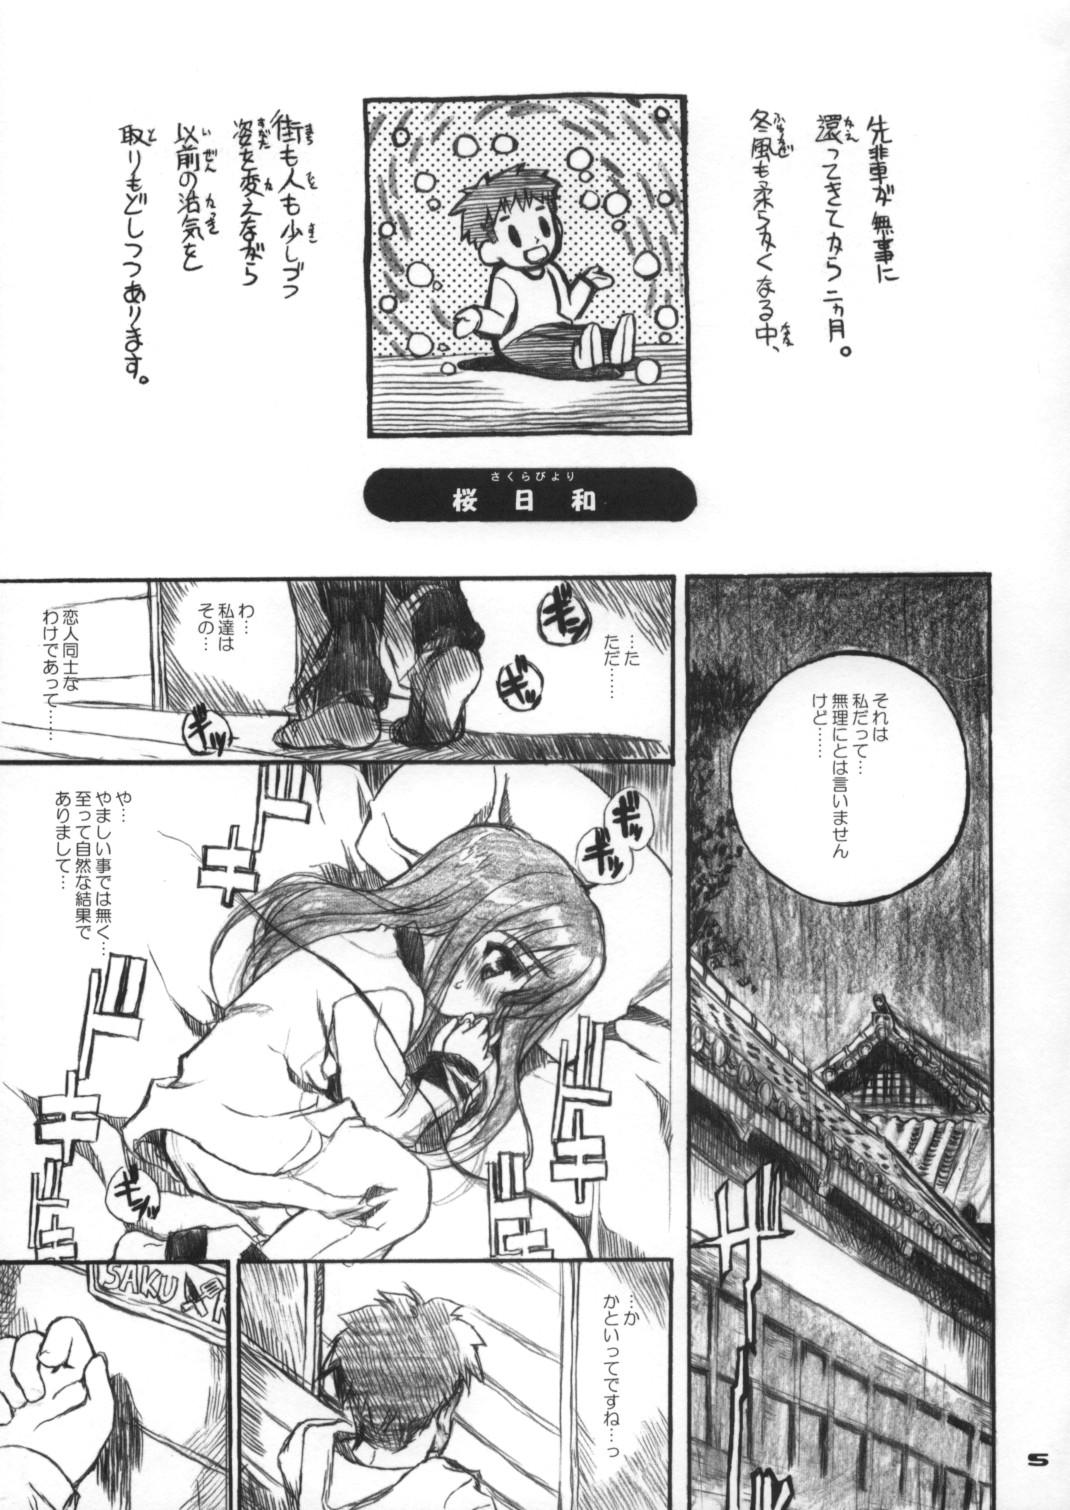 Mediumtits Neko-bus Tei no Hon Vol.6 Sakurabiyori - Fate stay night Ass - Page 4